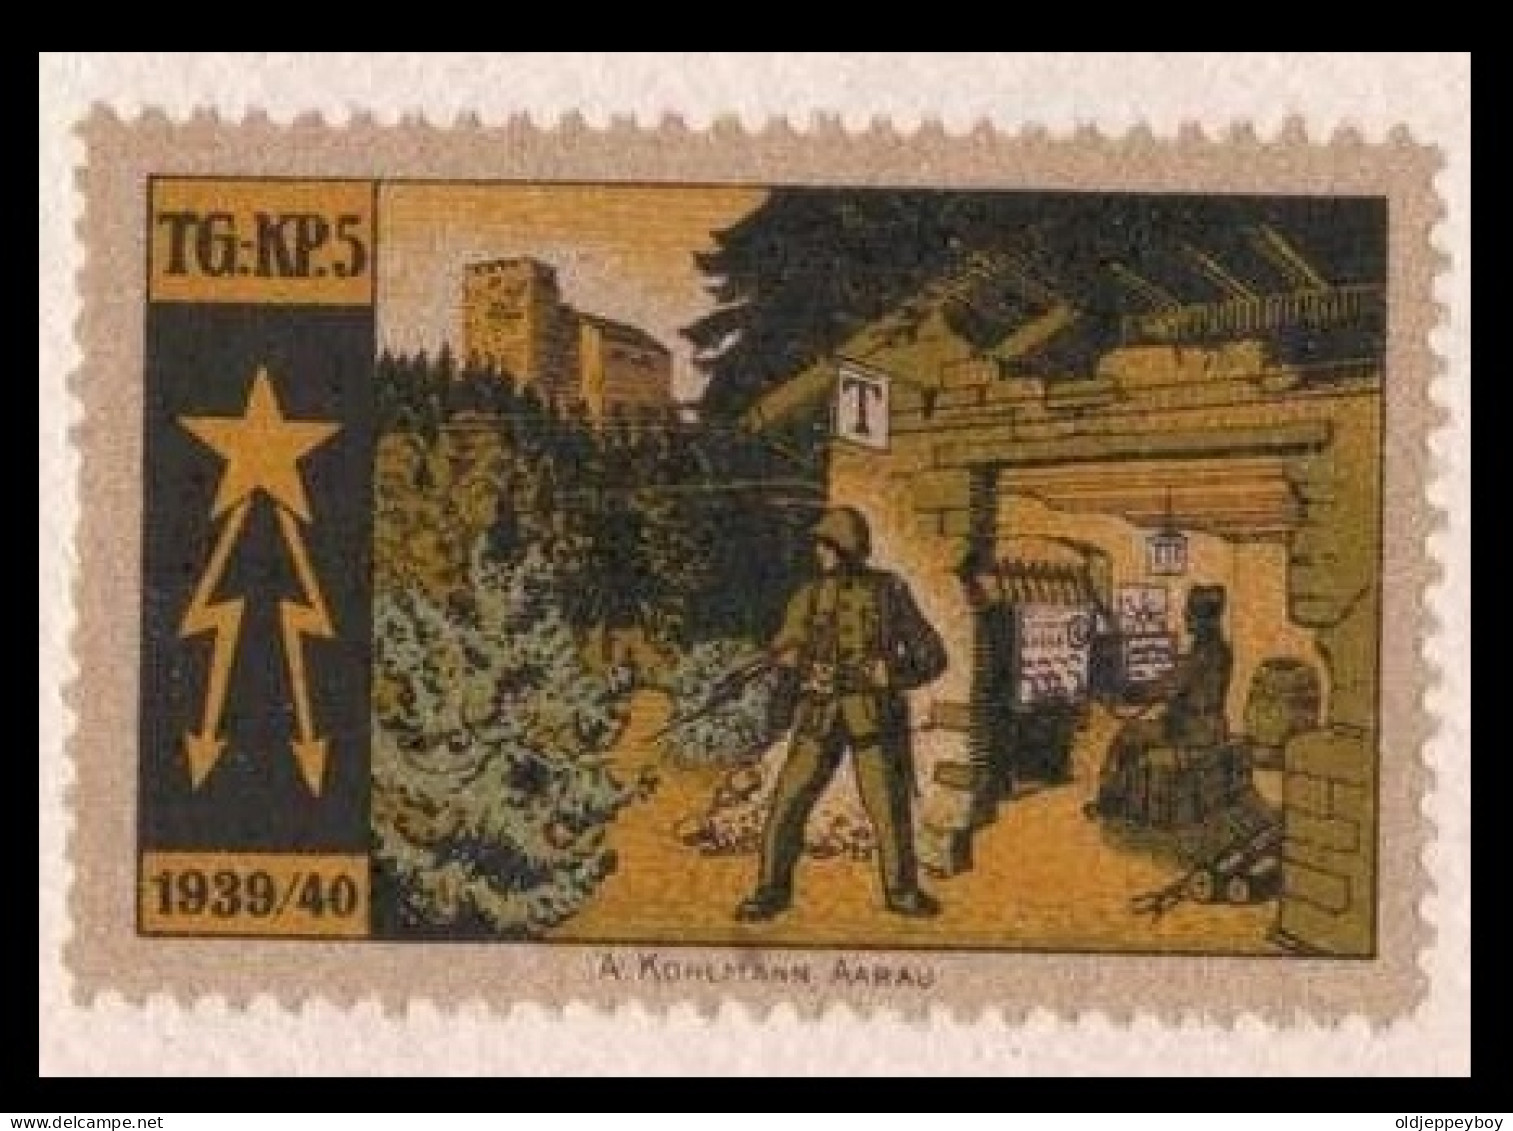 Suisse /Schweiz/Switzerland // Vignette /Schweiz Soldatenmarken 1939-45: Telegraphen-Pioniere TG KP 5 Nr. 12 - Vignetten